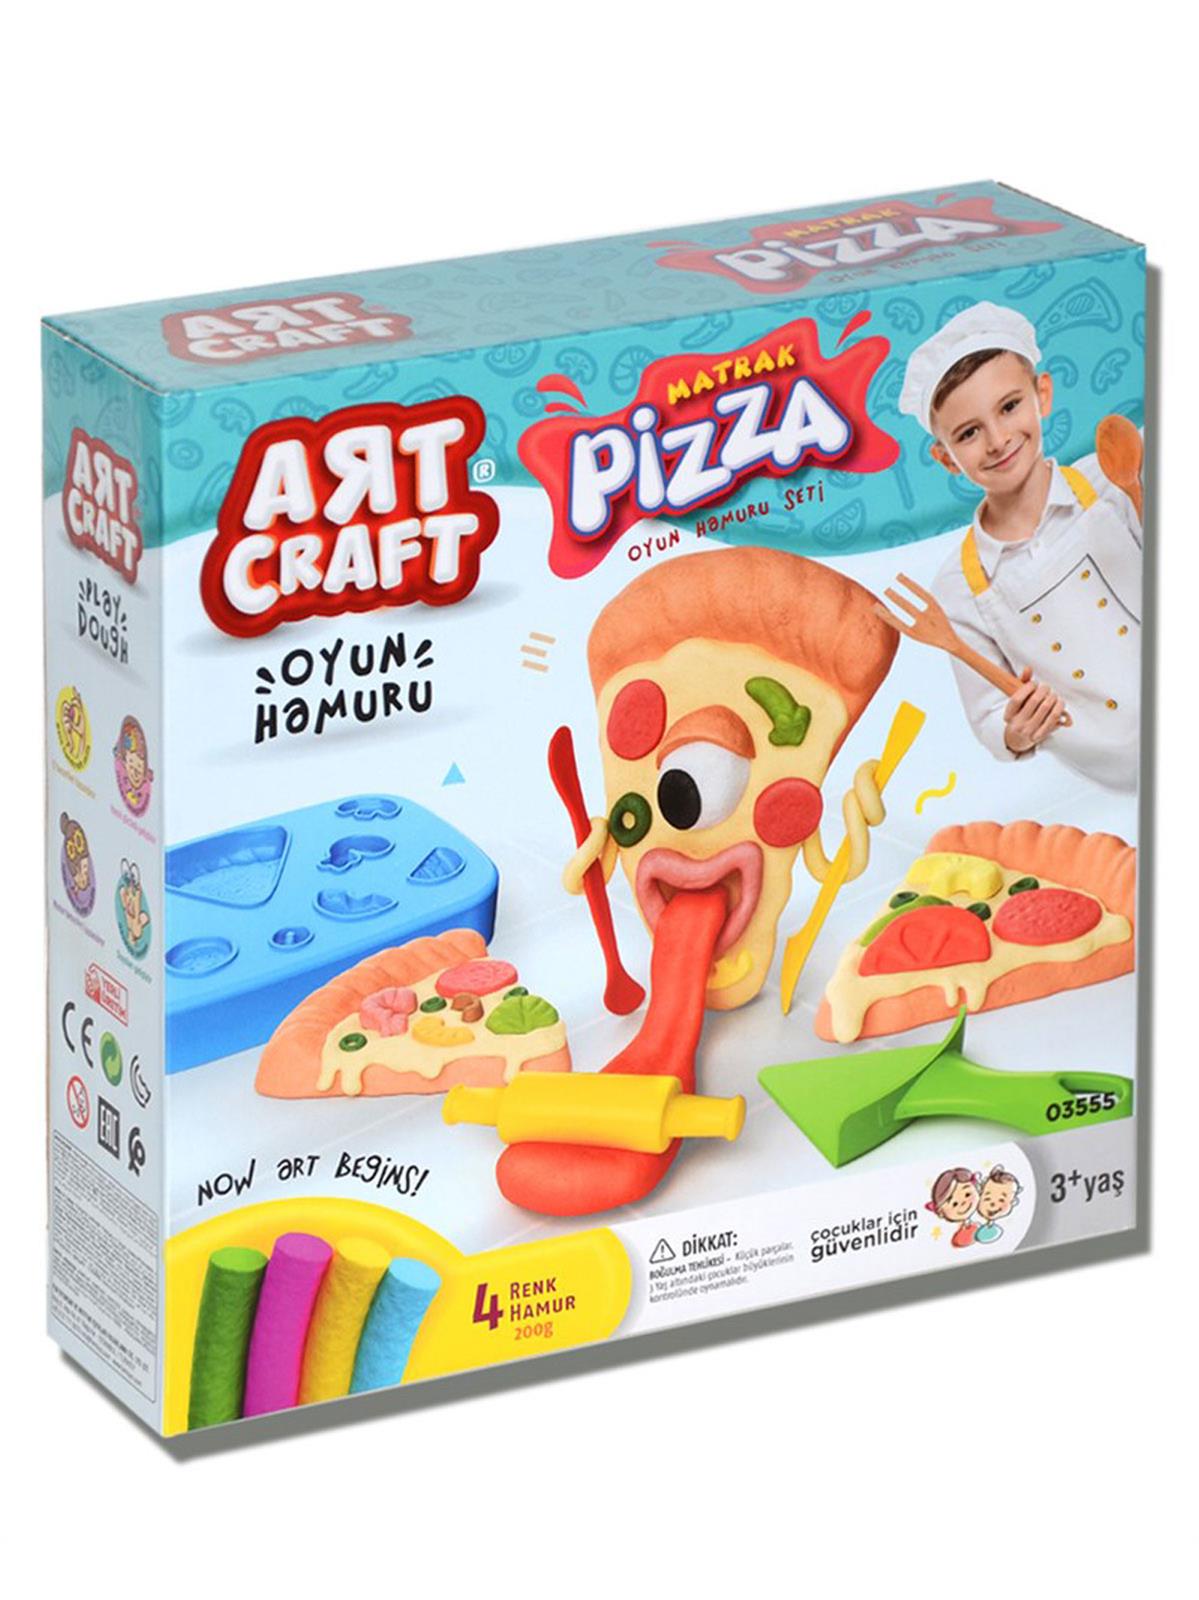 Art Craft Matrak Pizza Oyun Hamuru Seti 200 Gr